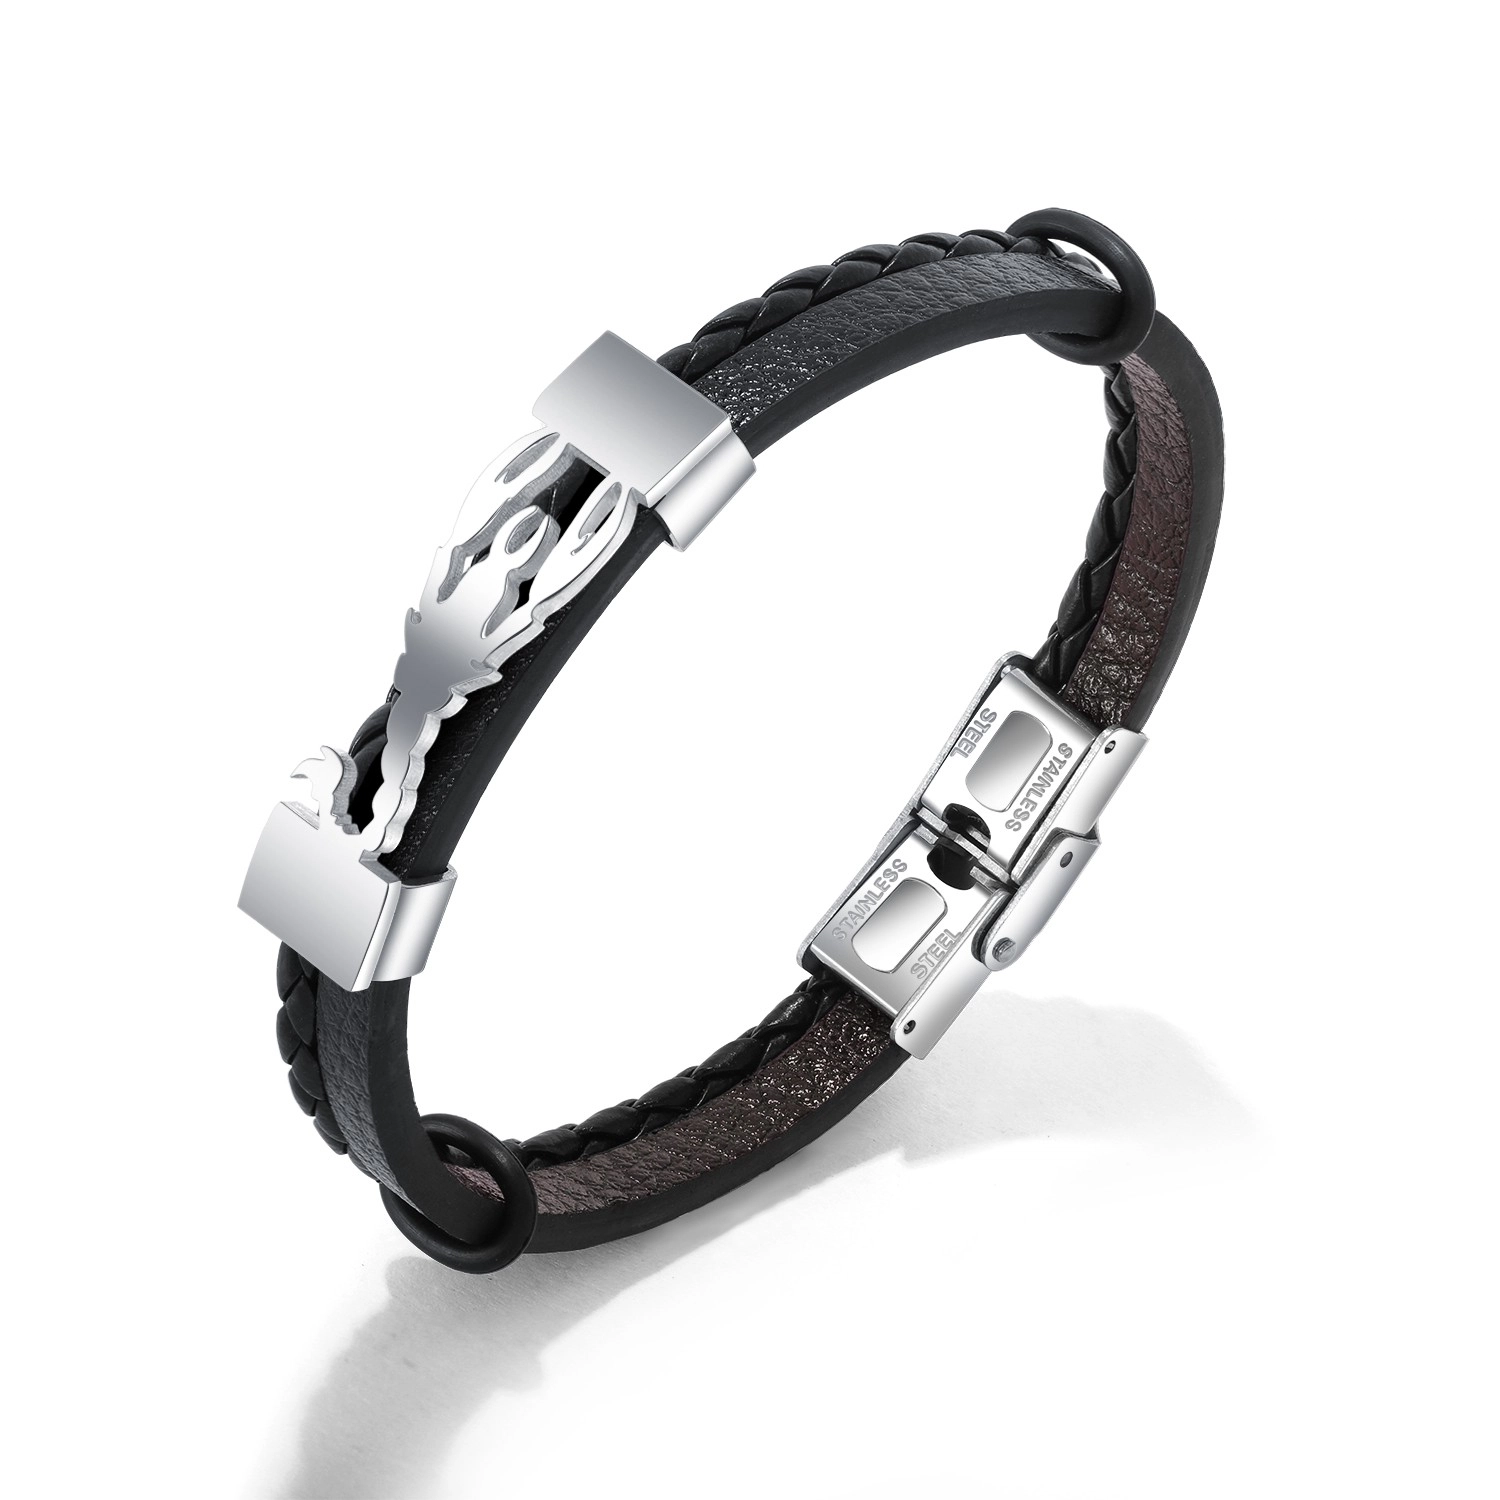 E-shop Šperky Eshop - Čierny náramok z umelej kože, oceľová známka striebornej farby - škorpión SP79.08